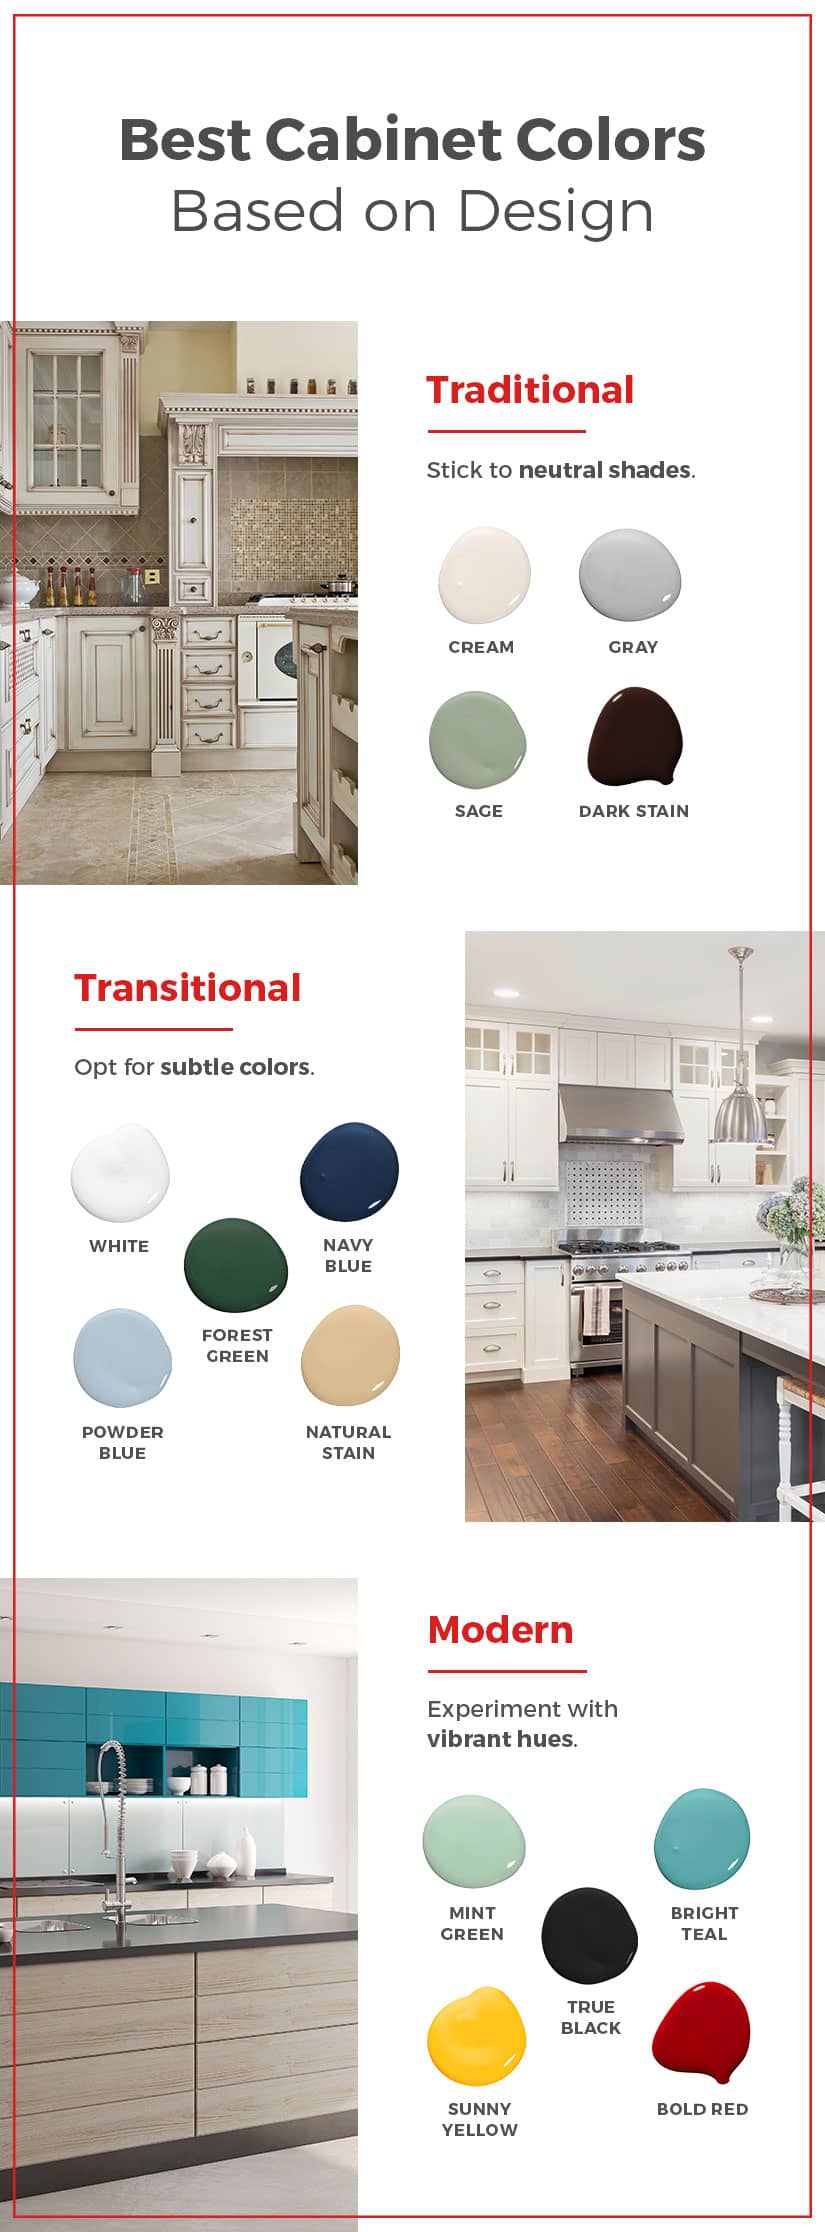 https://cdn.kitchencabinetkings.com/media/siege/choose-kitchen-cabinet-color/choose-kitchen-color-scheme_cabinet-design.jpg